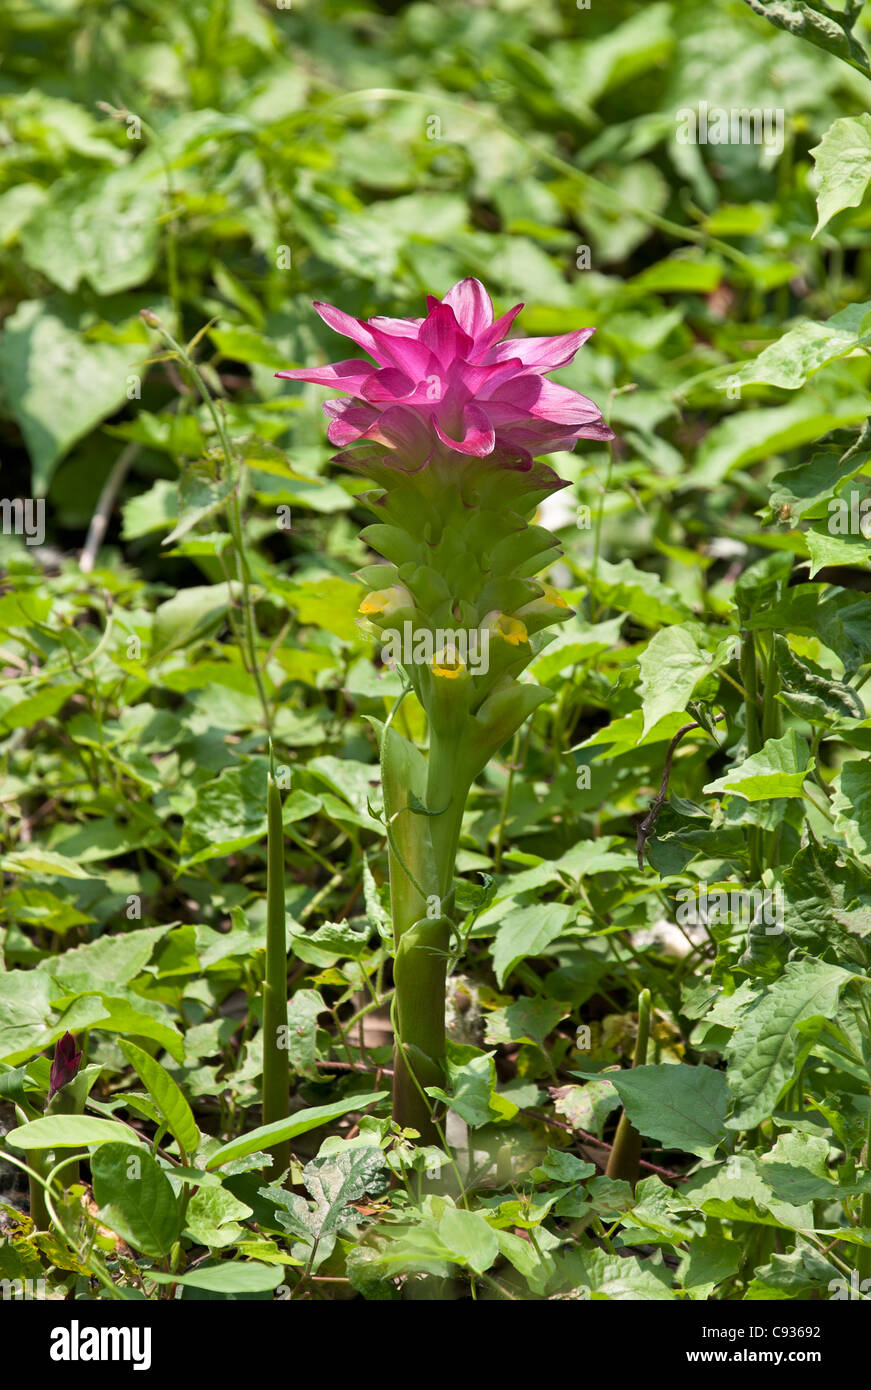 Cucurma aromatica, un miembro de la familia de jengibre, tiene flores blancas con amarillo en los labios y en la parte superior rosa brácteas. Foto de stock